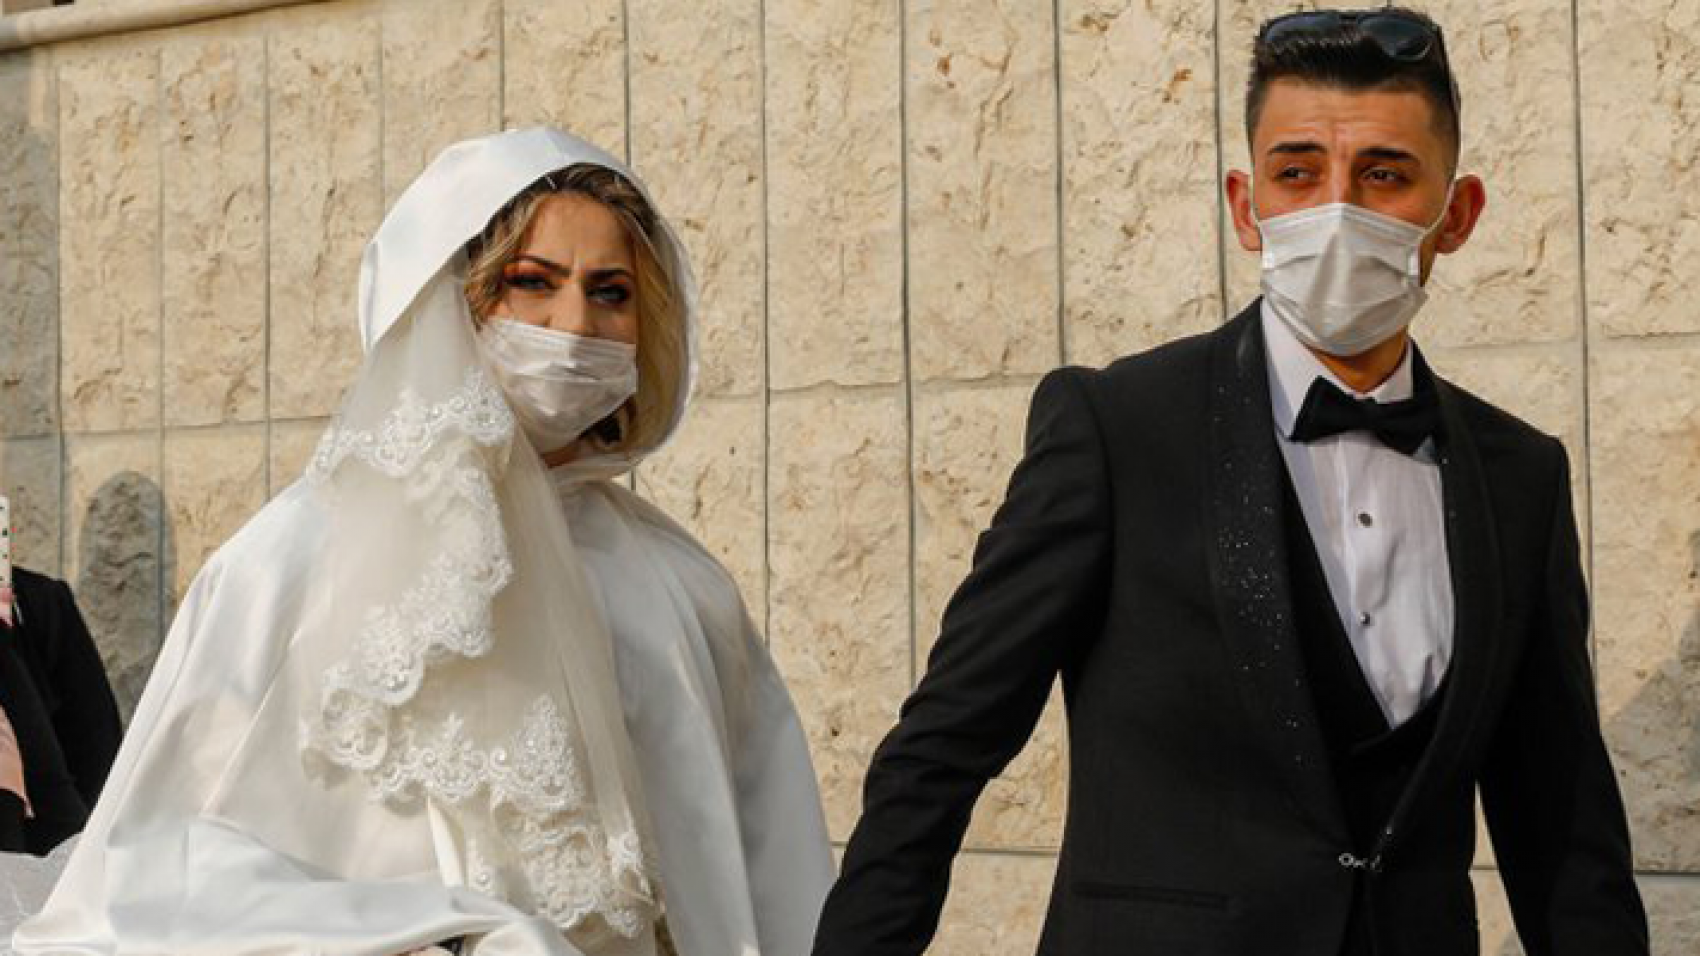 bodas en pandemia